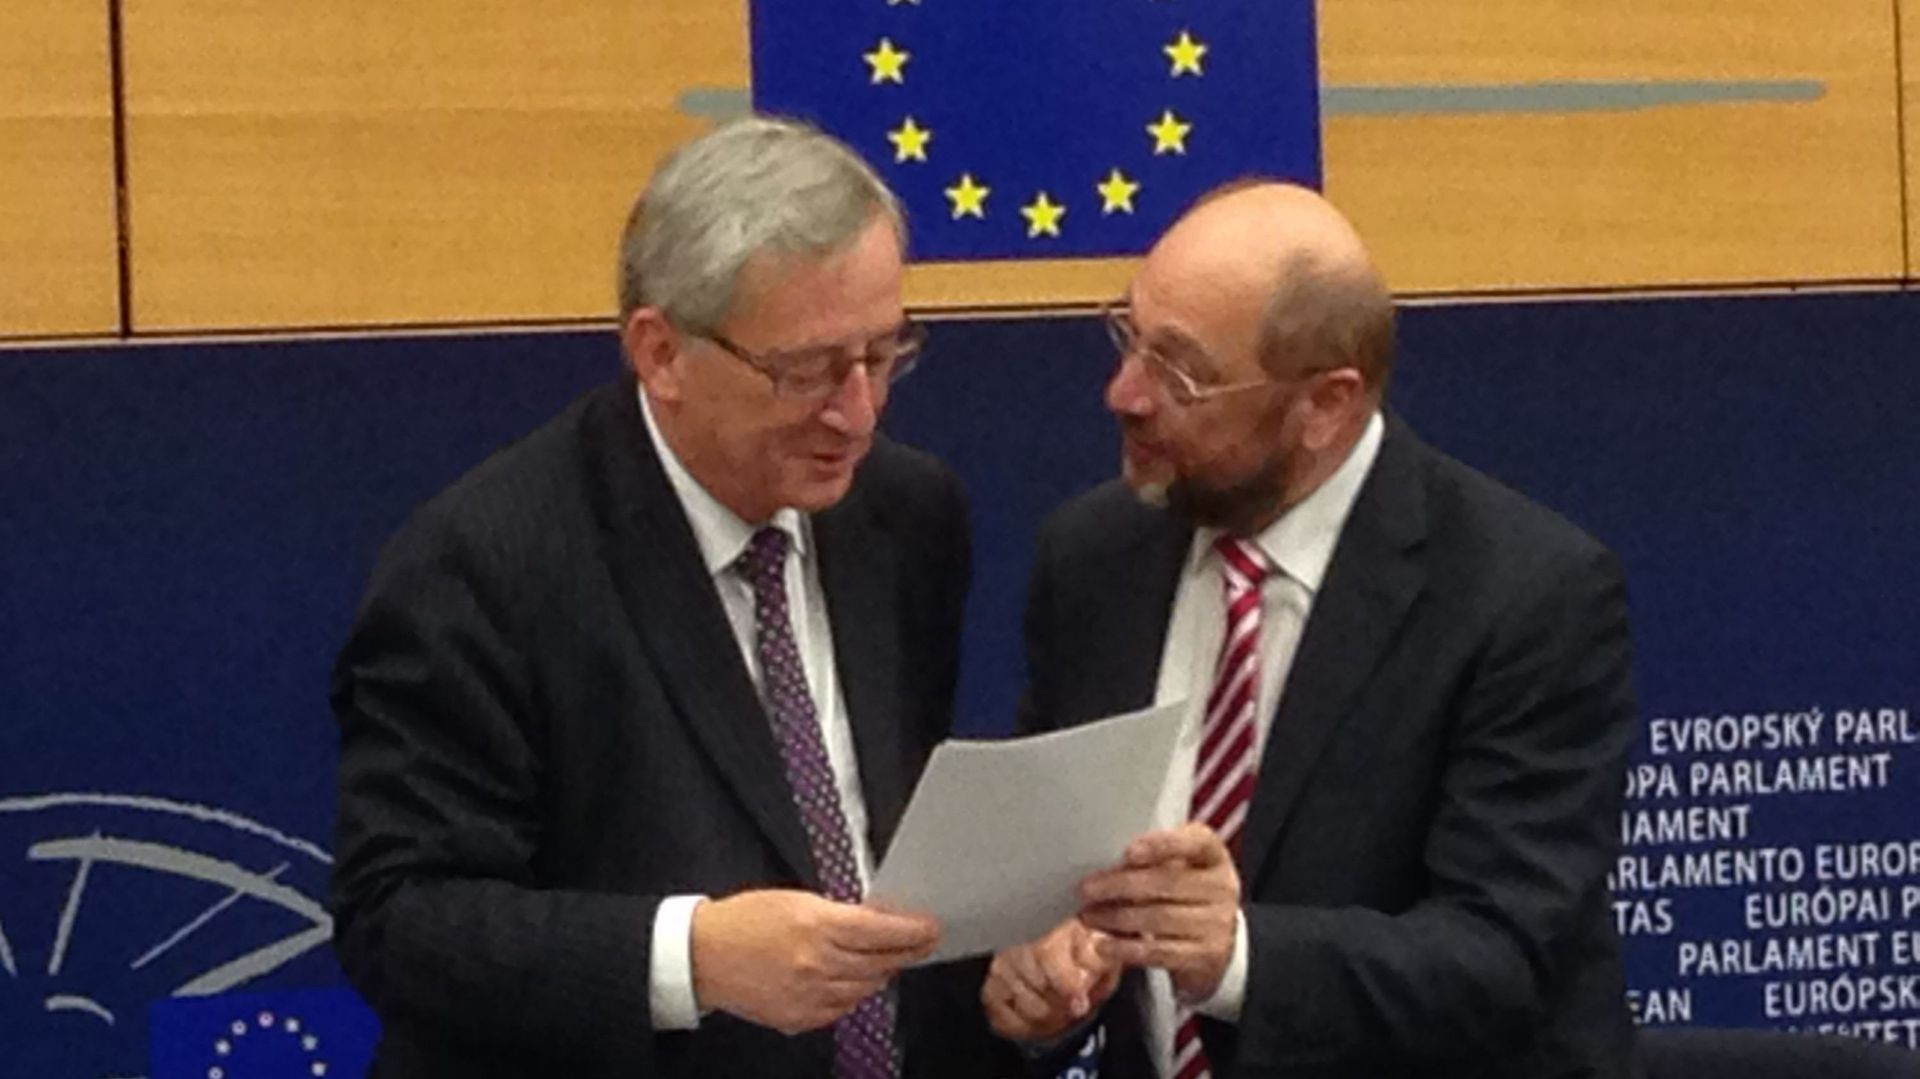 Le président du Parlement européen, Martin Schultz, remet à Jean-Claude Juncker le procès verbal du vote intervenu un peu plus tôt, par lequel les eurodéputés le confirment à la présidence de la Commission.